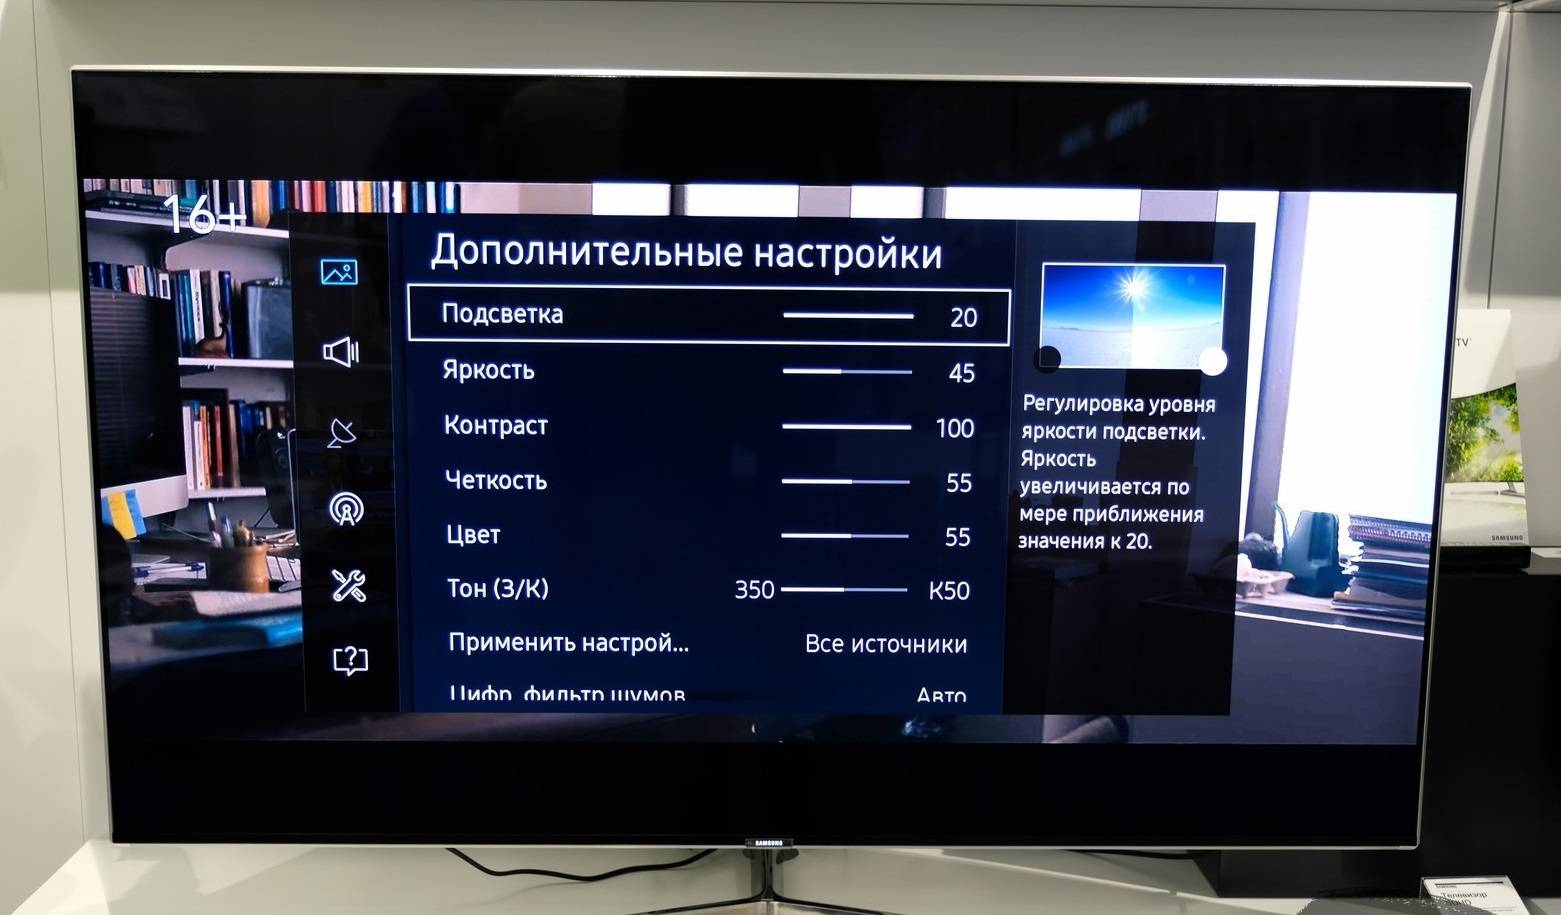 Как самостоятельно настроить телевизор после покупки [перевод] / stereo.ru